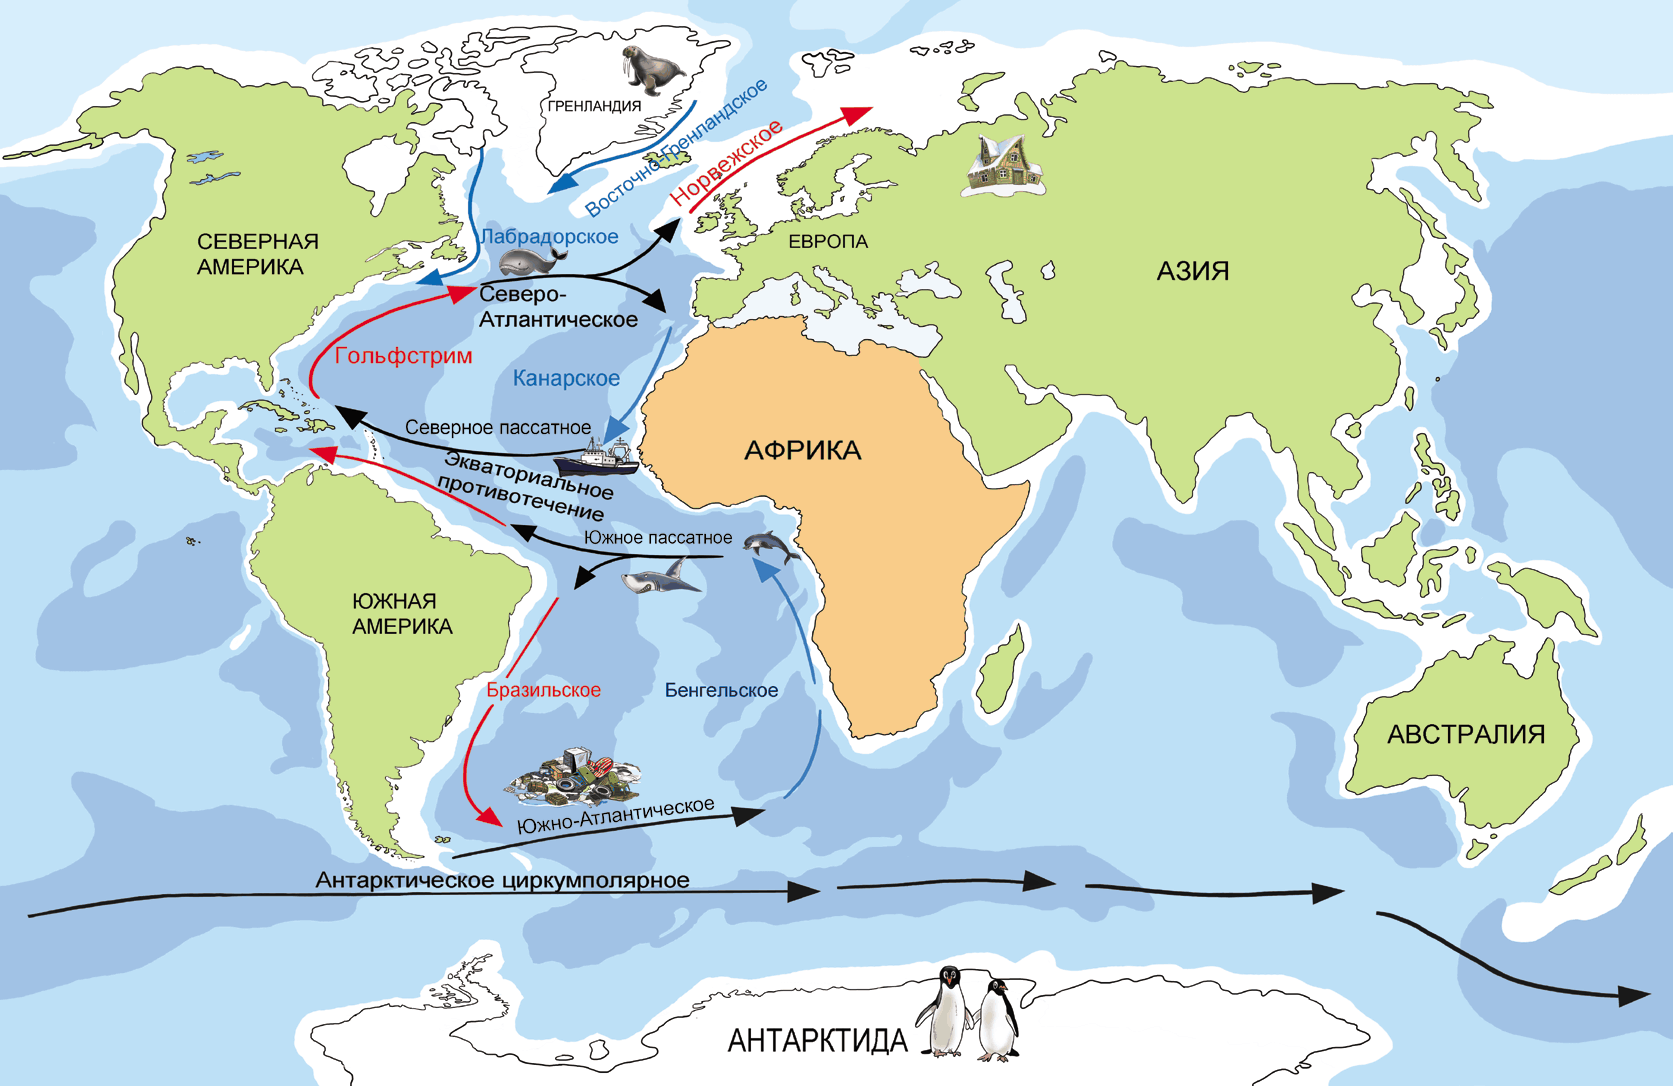 Самое большое течение в атлантическом океане. Гольфстрим на карте Атлантического океана. Северо-атлантическое течение на карте. Гольфстрим в Атлантическом океане. Карта течений Атлантического океана.